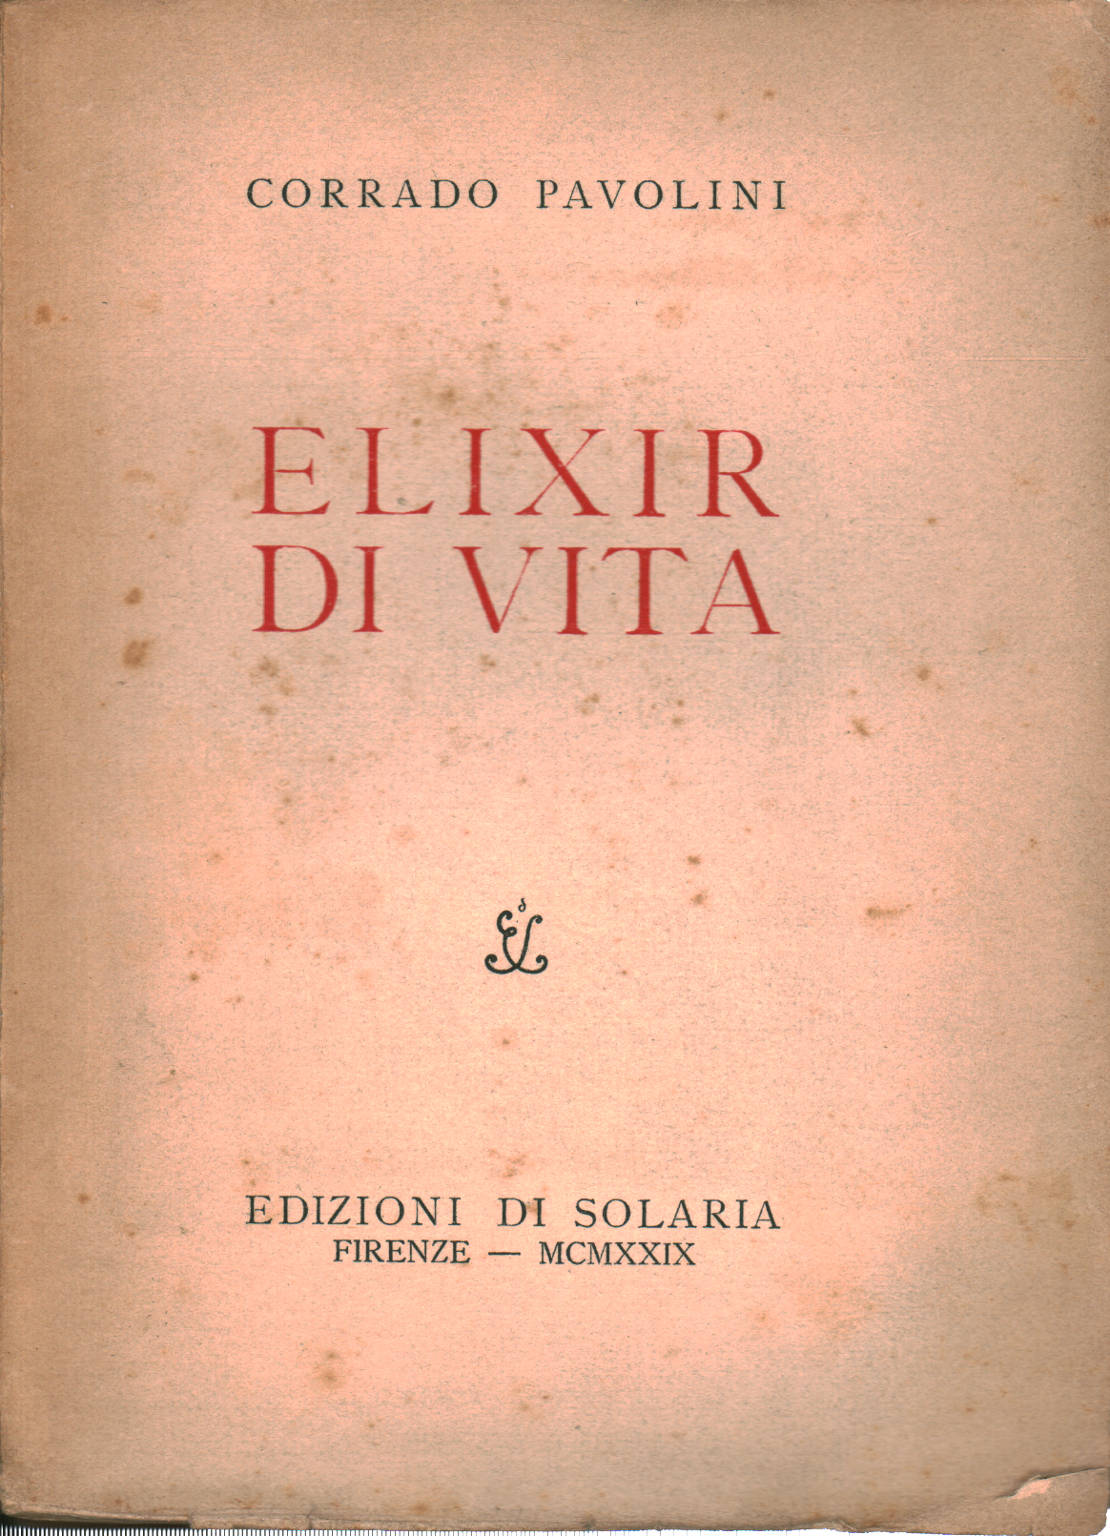 Elixir of life, Corrado Pavolini